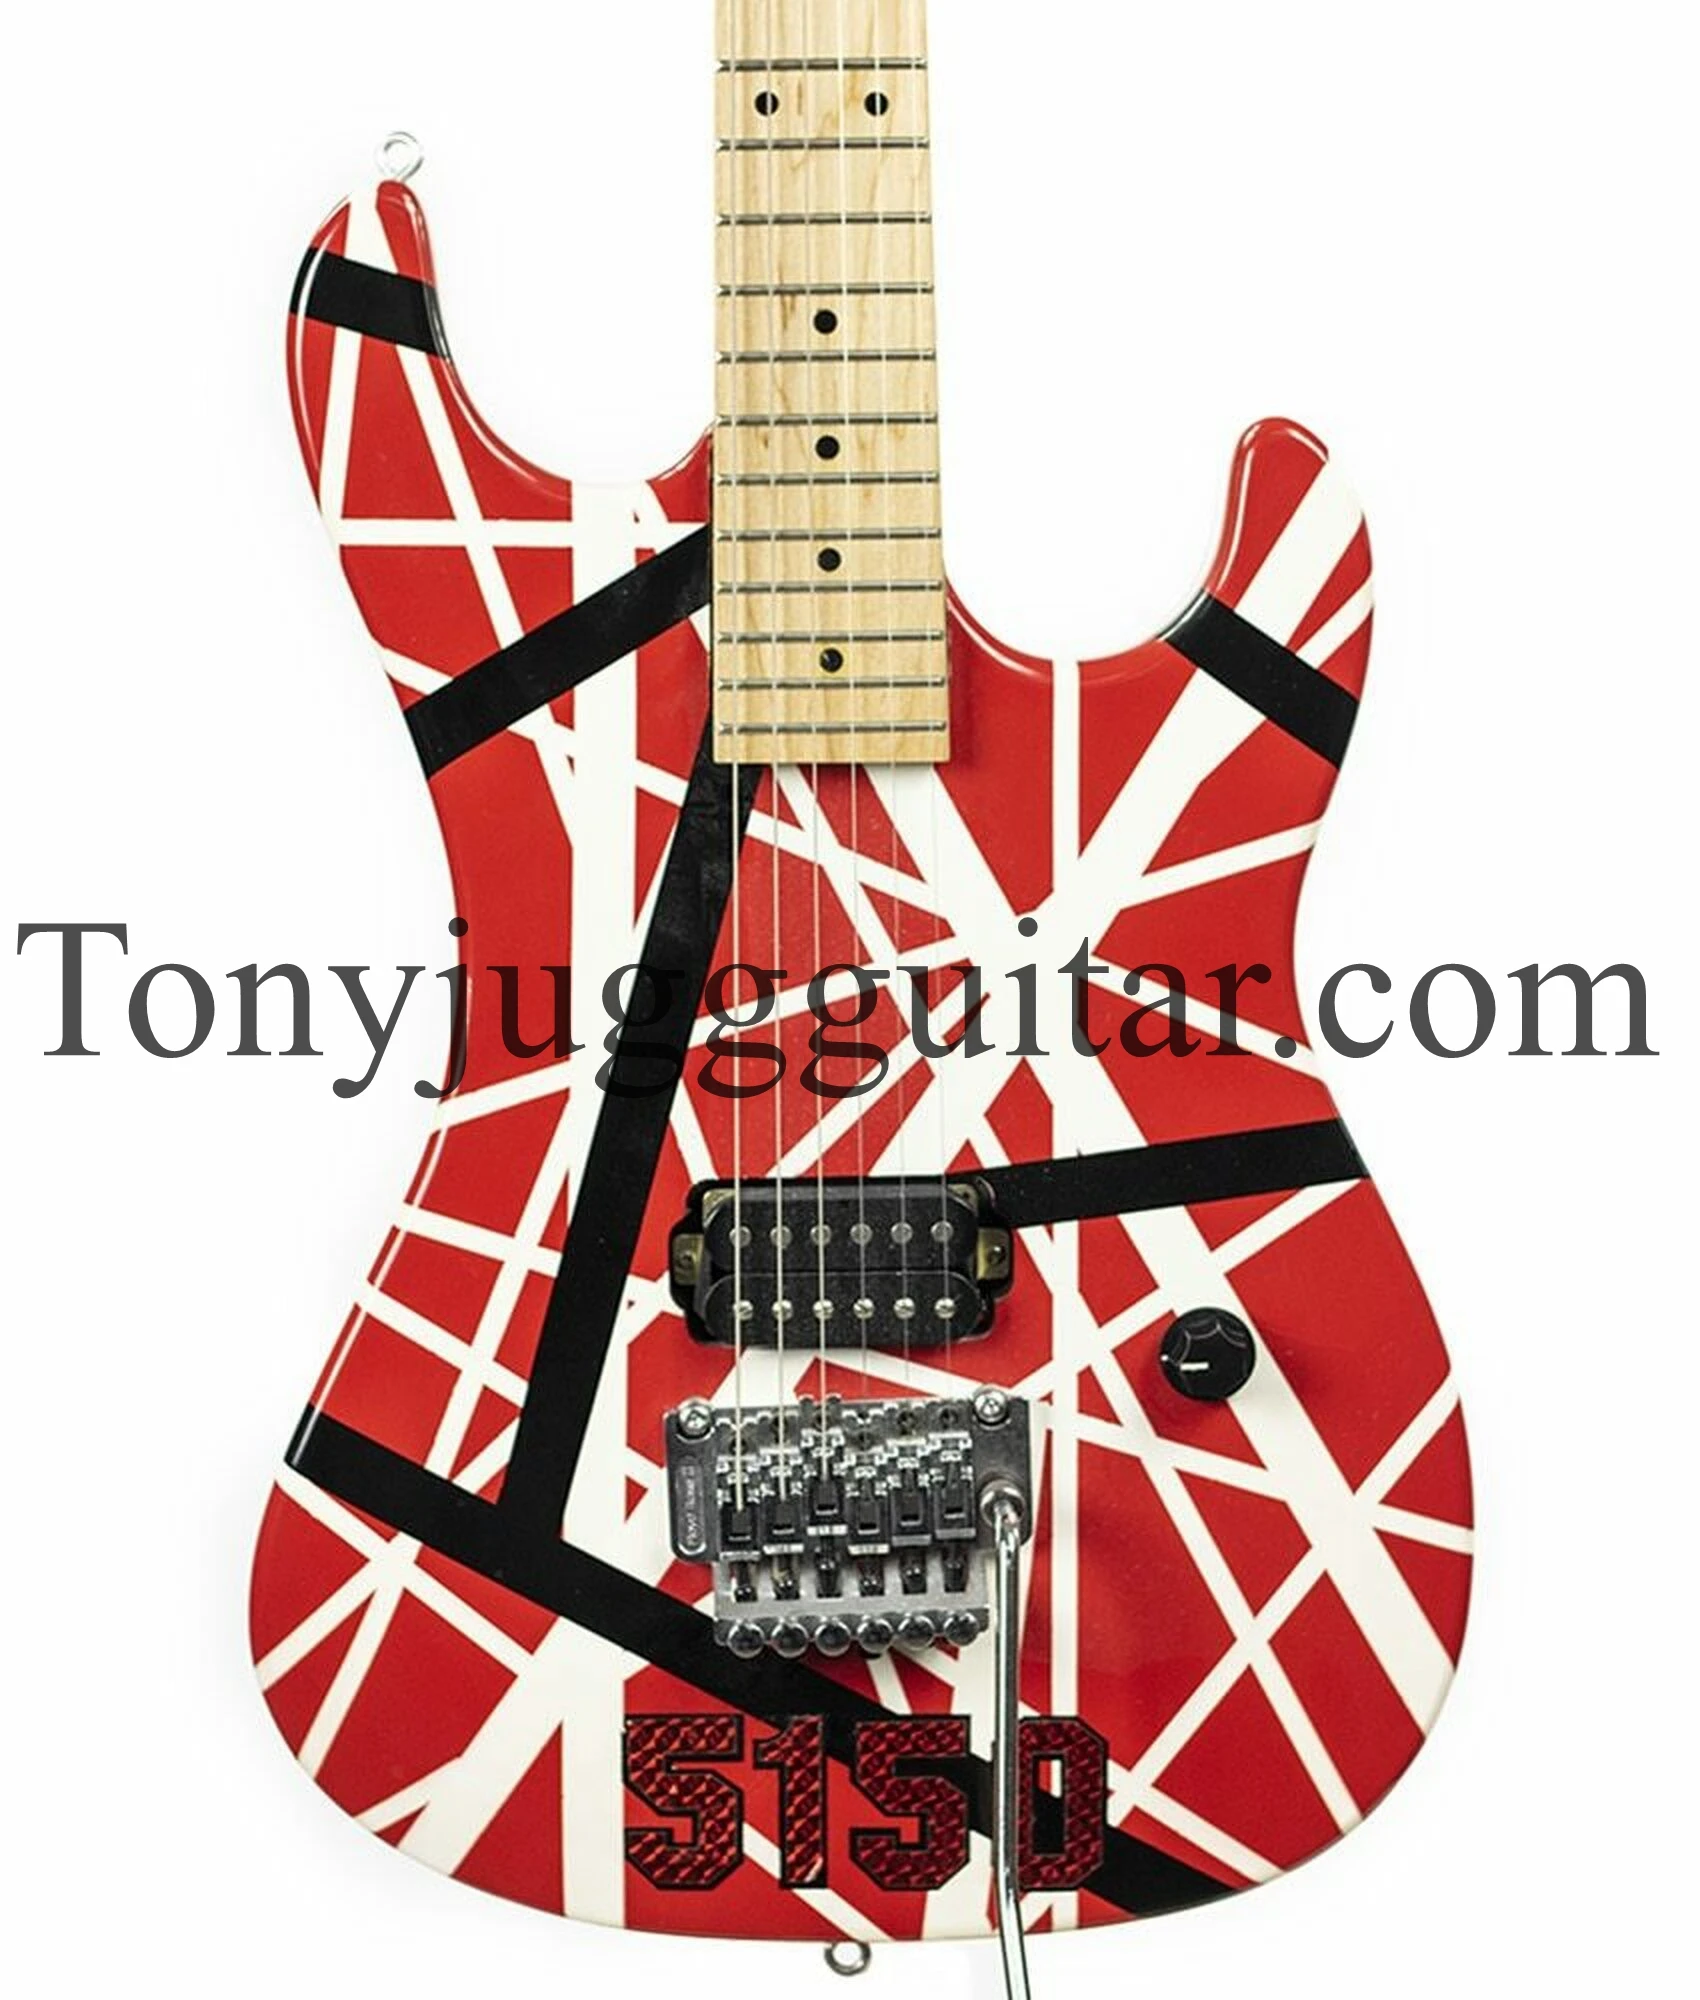 

Kram Eddie Edward Van Halen 5150 White Stripe Red Electric Guitar Floyd Rose Tremolo Bridge, Locking Nut, Maple Neck,